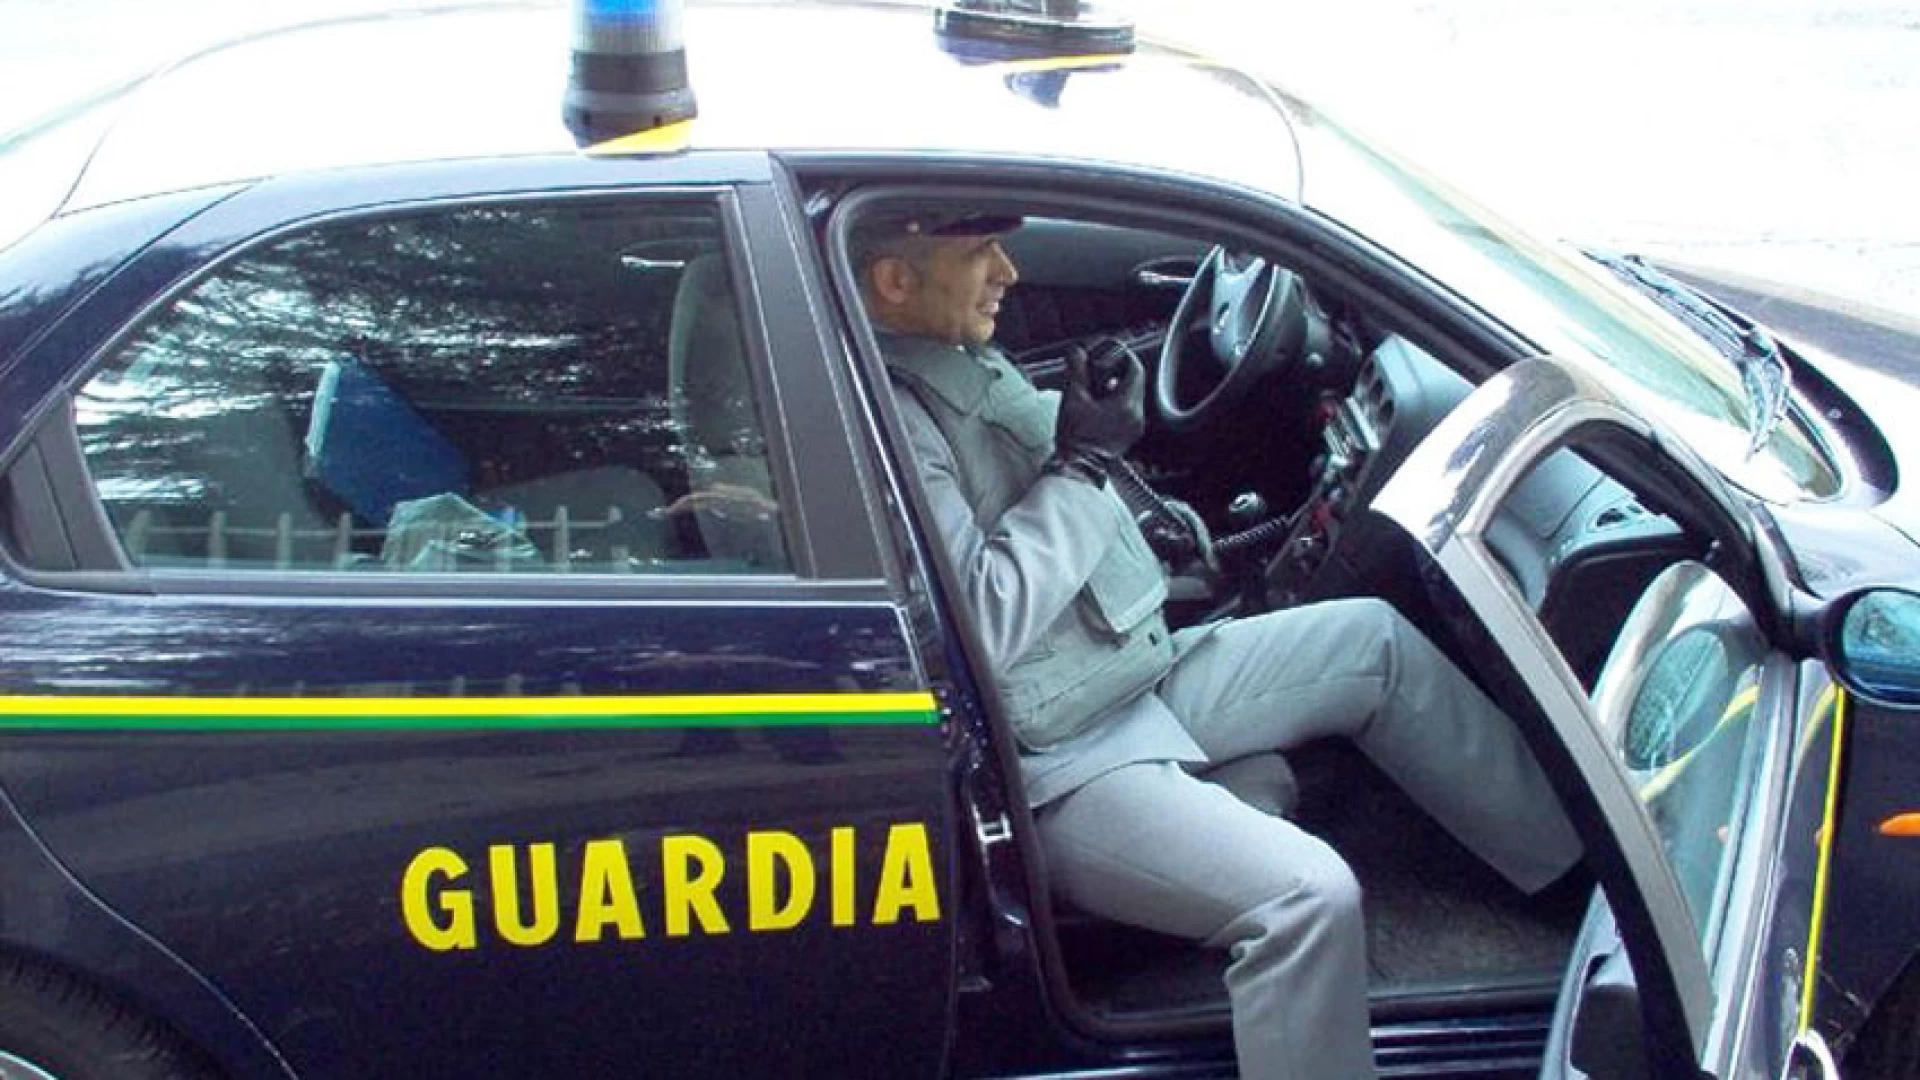 Campobasso: la Guardia di Finanza segnala 34 persone a vario titolo per possesso di stupefacenti.